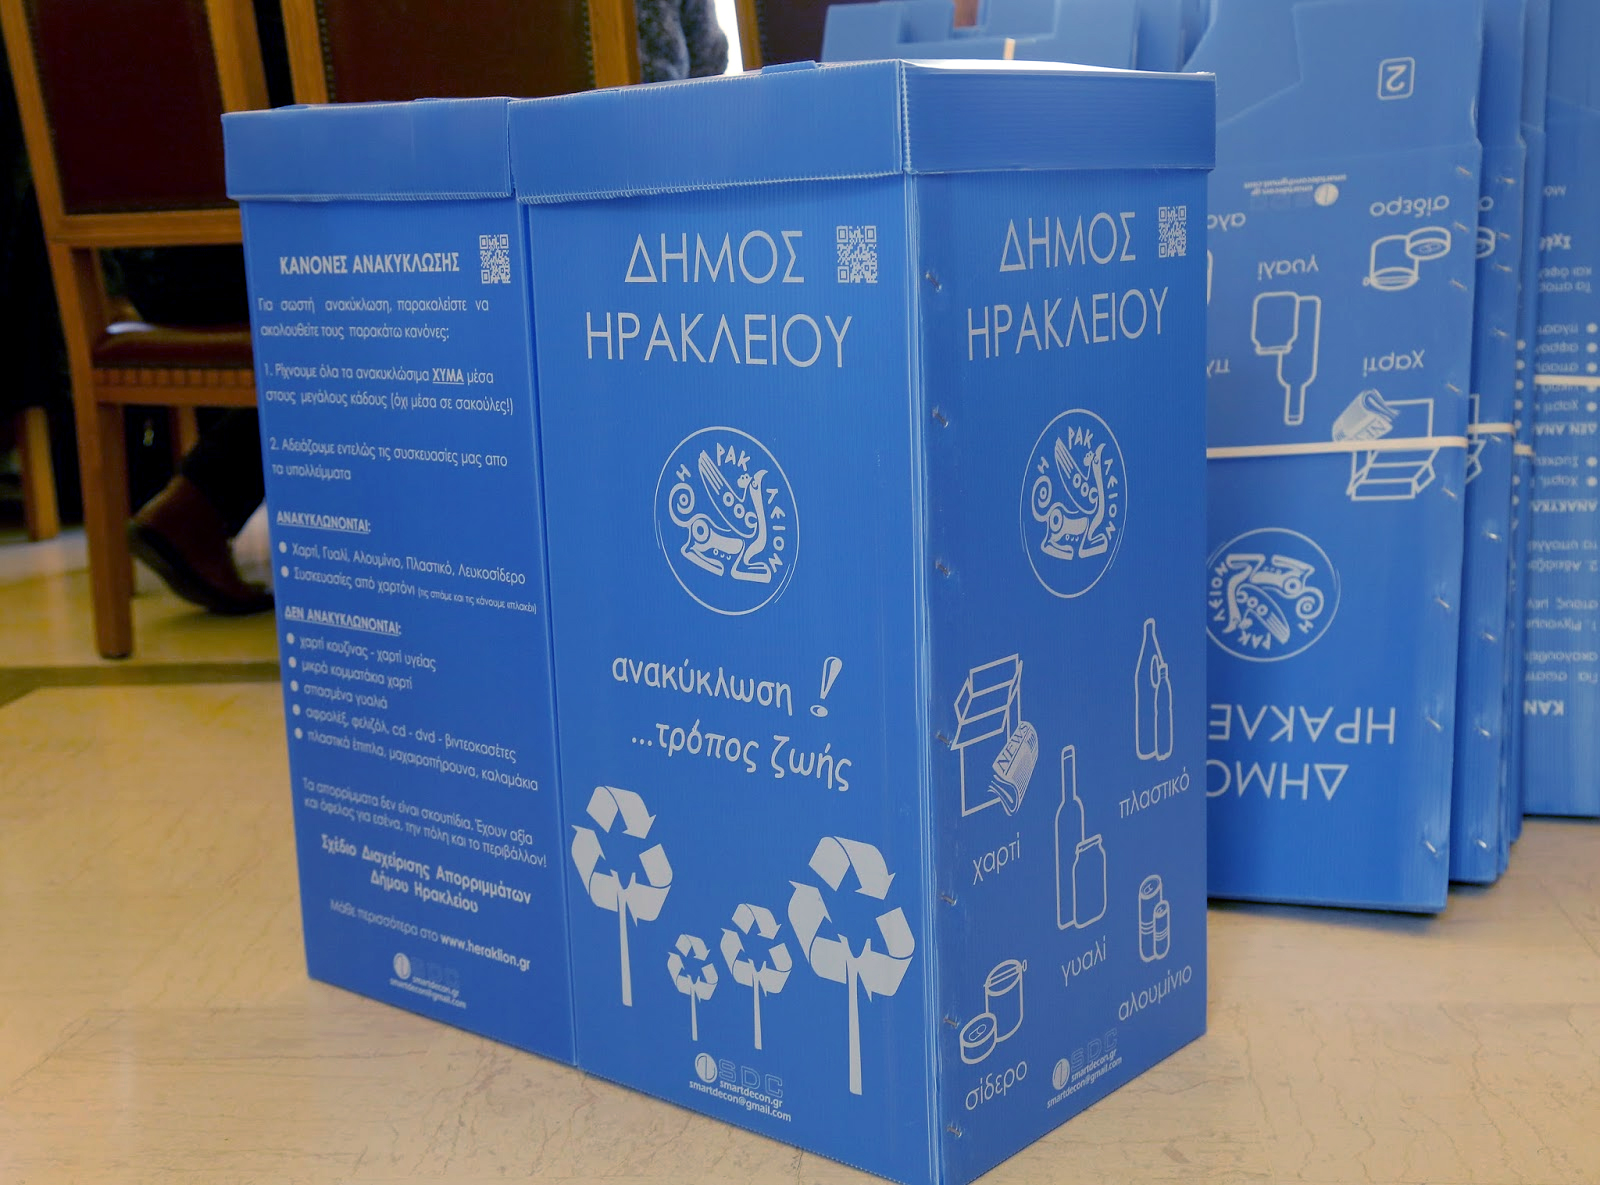 Νέα διανομή οικιακών κάδων ανακύκλωσης από τον Δήμο Ηρακλείου